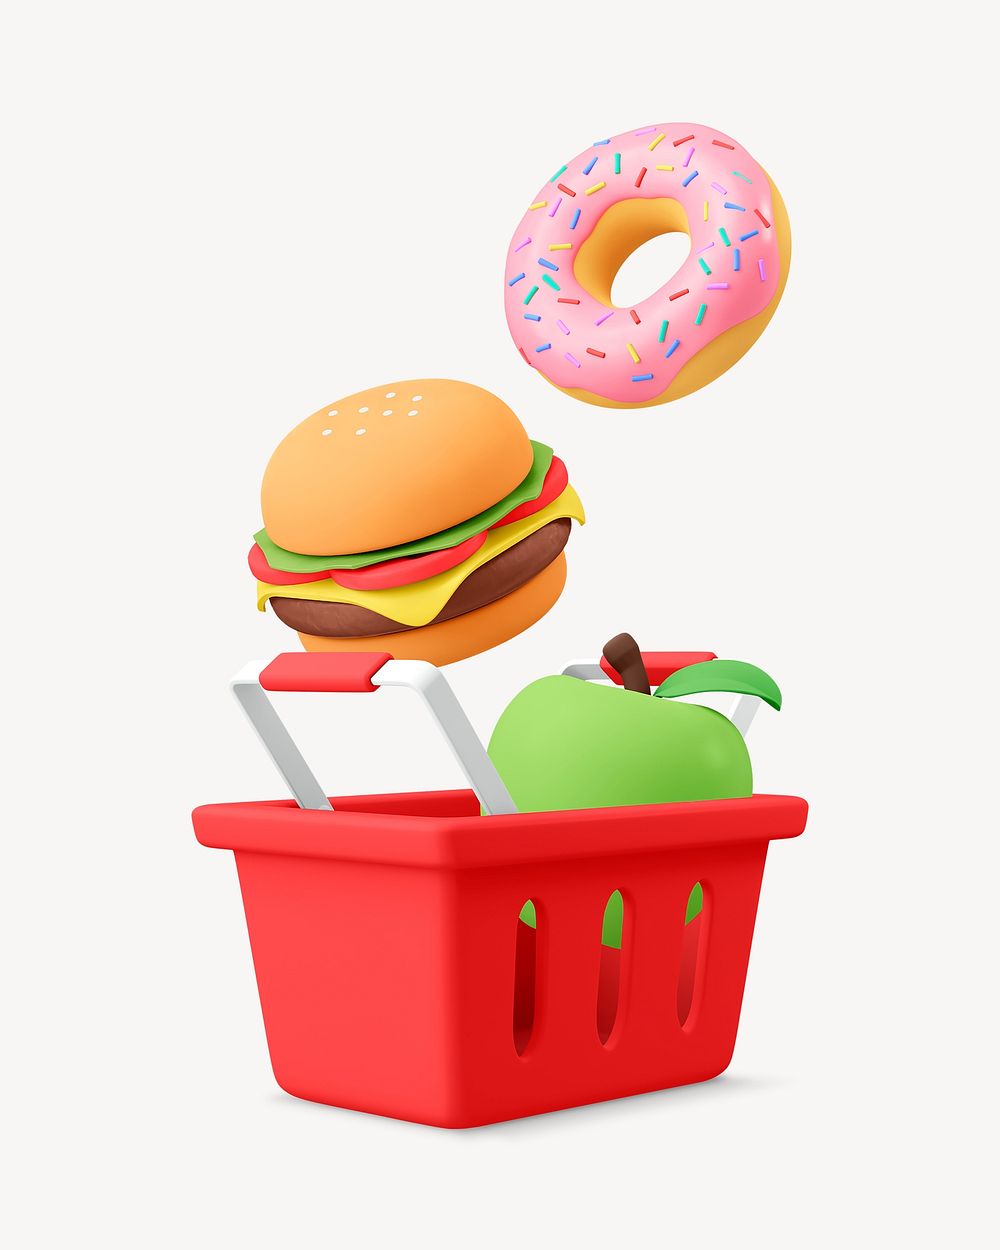 Food shopping basket, 3D object illustration 